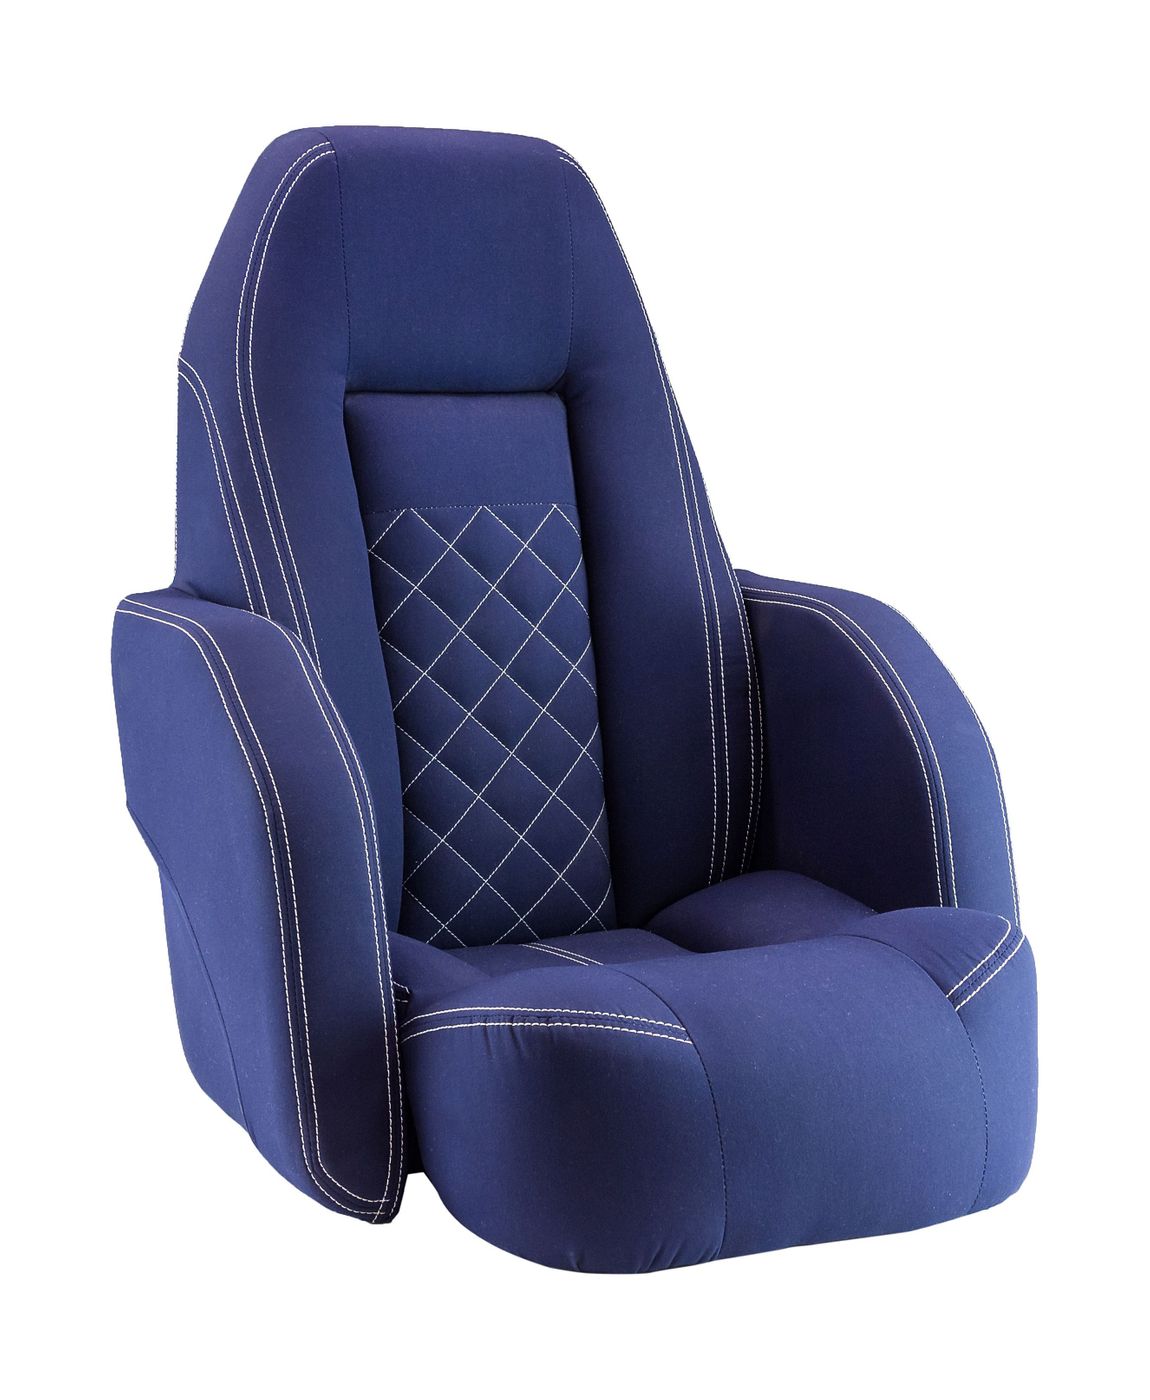 Кресло ROYALITA мягкое, подставка, обивка ткань Markilux темно-синяя 570000395 кресло для геймеров runner экокожа ткань красный 36 6 08 12